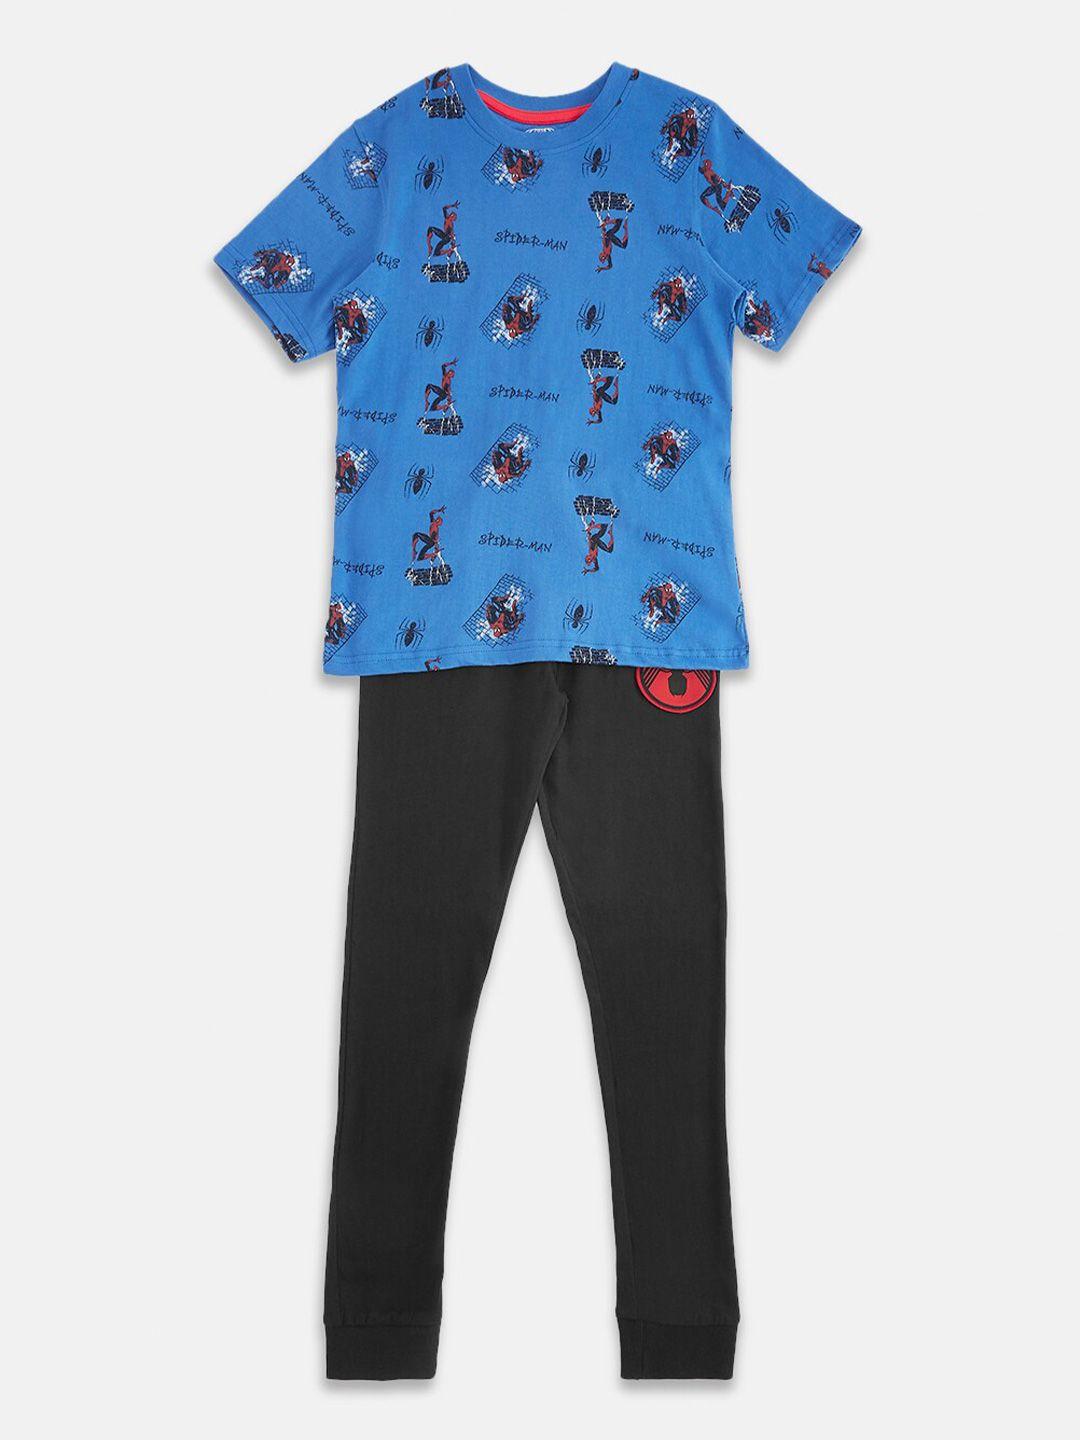 pantaloons junior boys printed pure cotton t-shirt with pyjamas